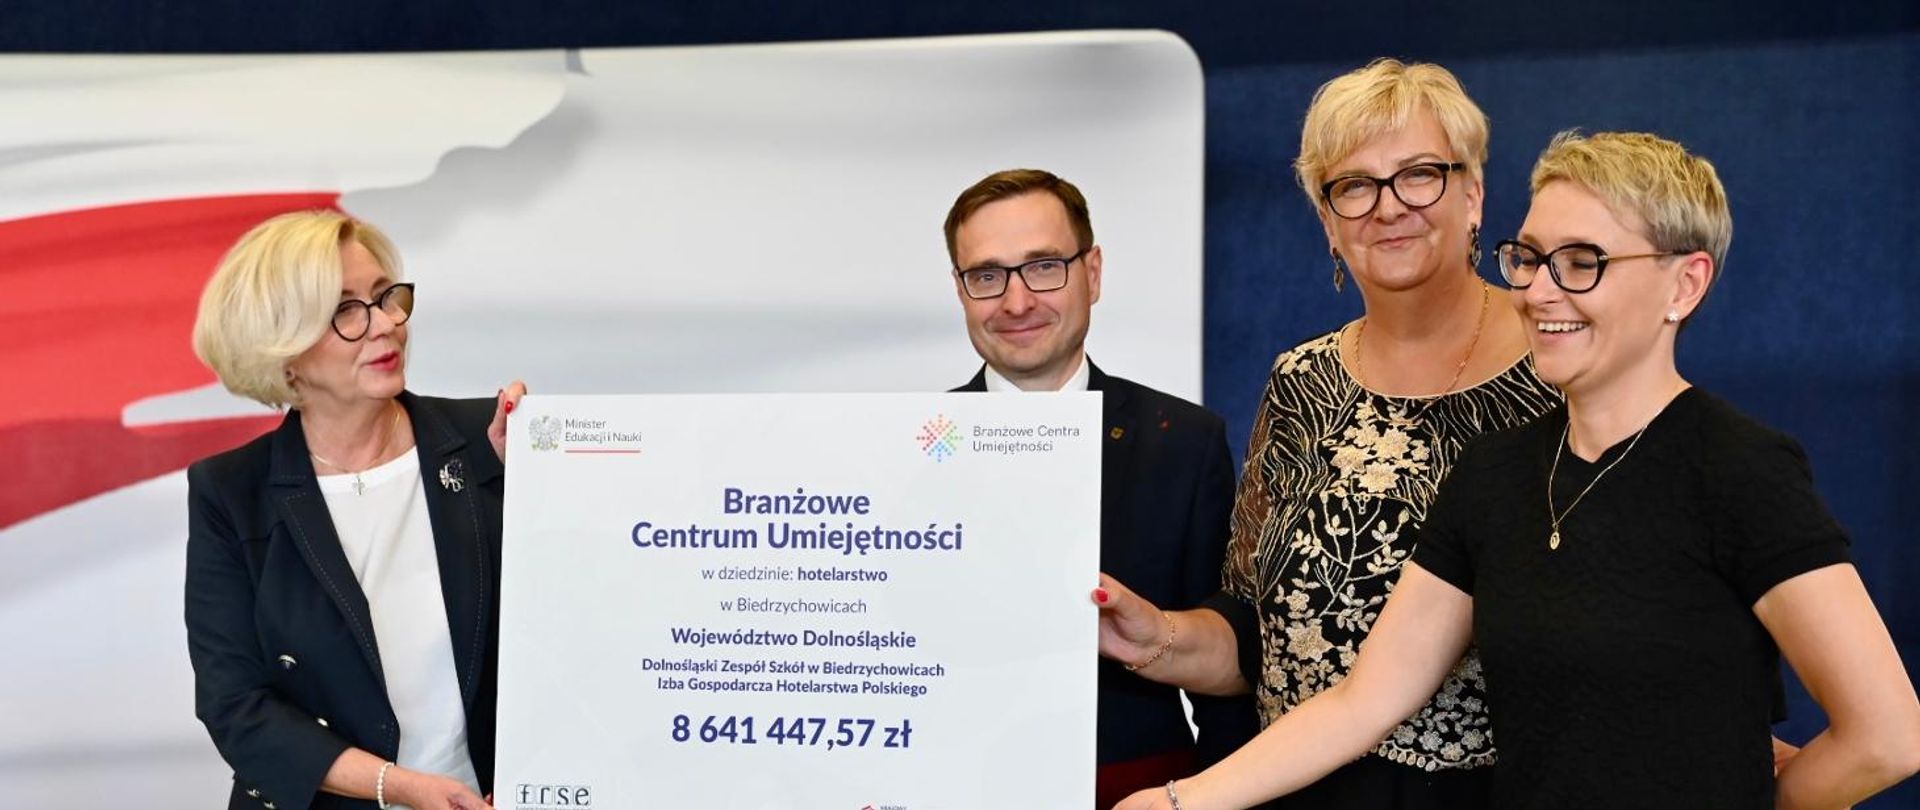 Ponad 90 mln zł na utworzenie Branżowych Centrów Umiejętności w województwie dolnośląskim